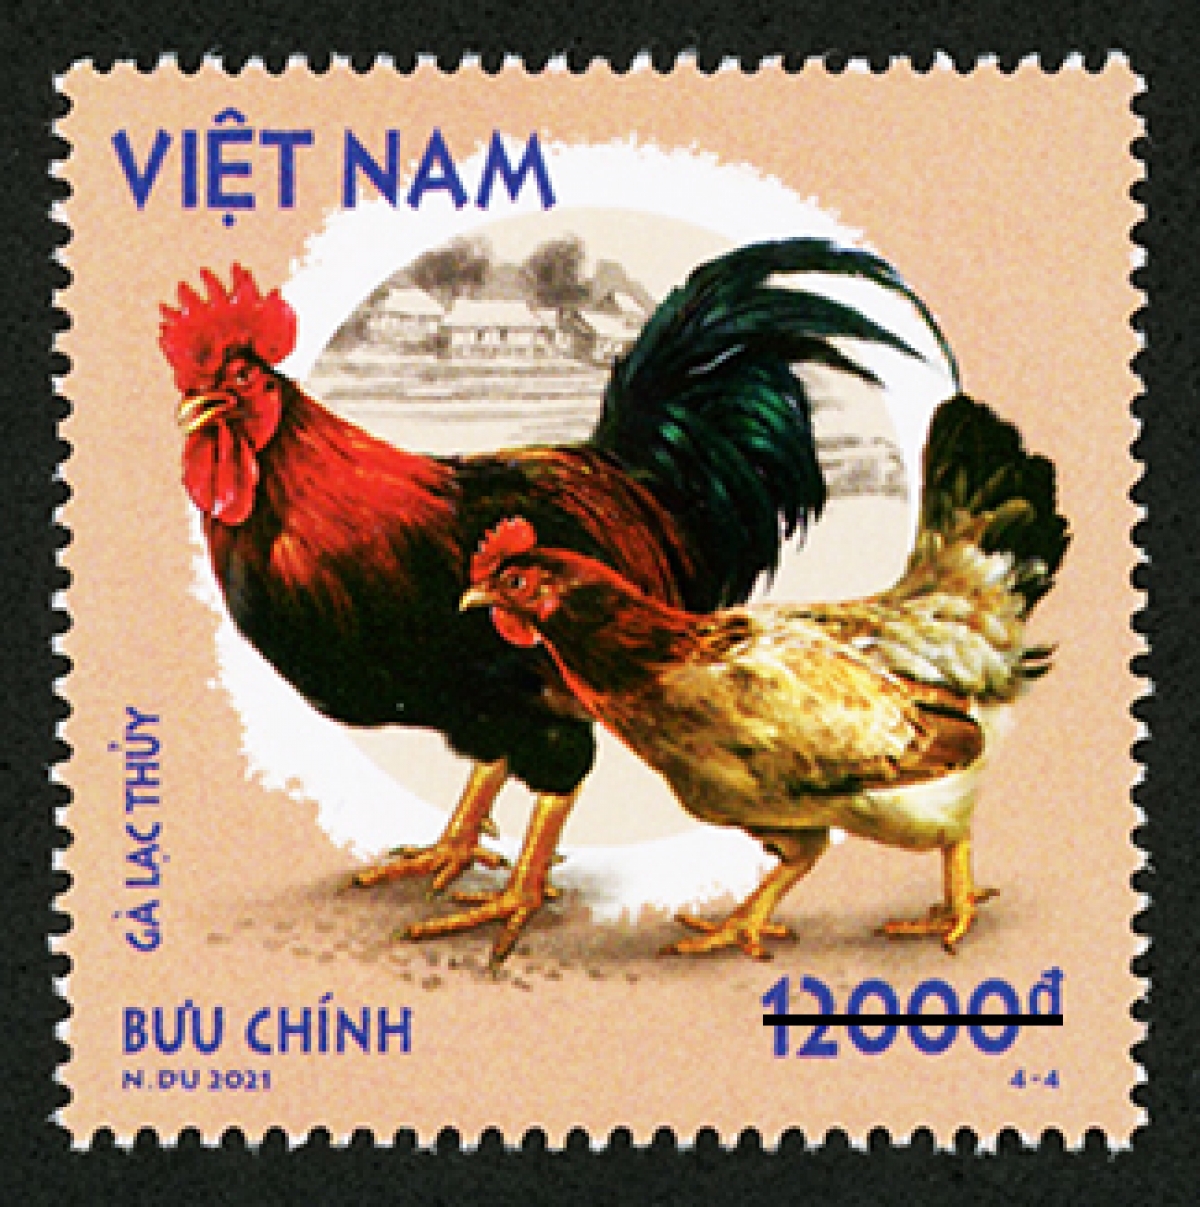 Mẫu 4-4: Gà Lạc Thủy, là giống gà thuần chủng (bản địa) của Việt Nam, được coi là giống gà đặc hữu và quý hiếm, có nguồn gốc từ huyện Lạc Thủy, tỉnh Hòa Bình và được nuôi từ khá lâu đời, là loài đang được bảo tồn nguồn gen. 